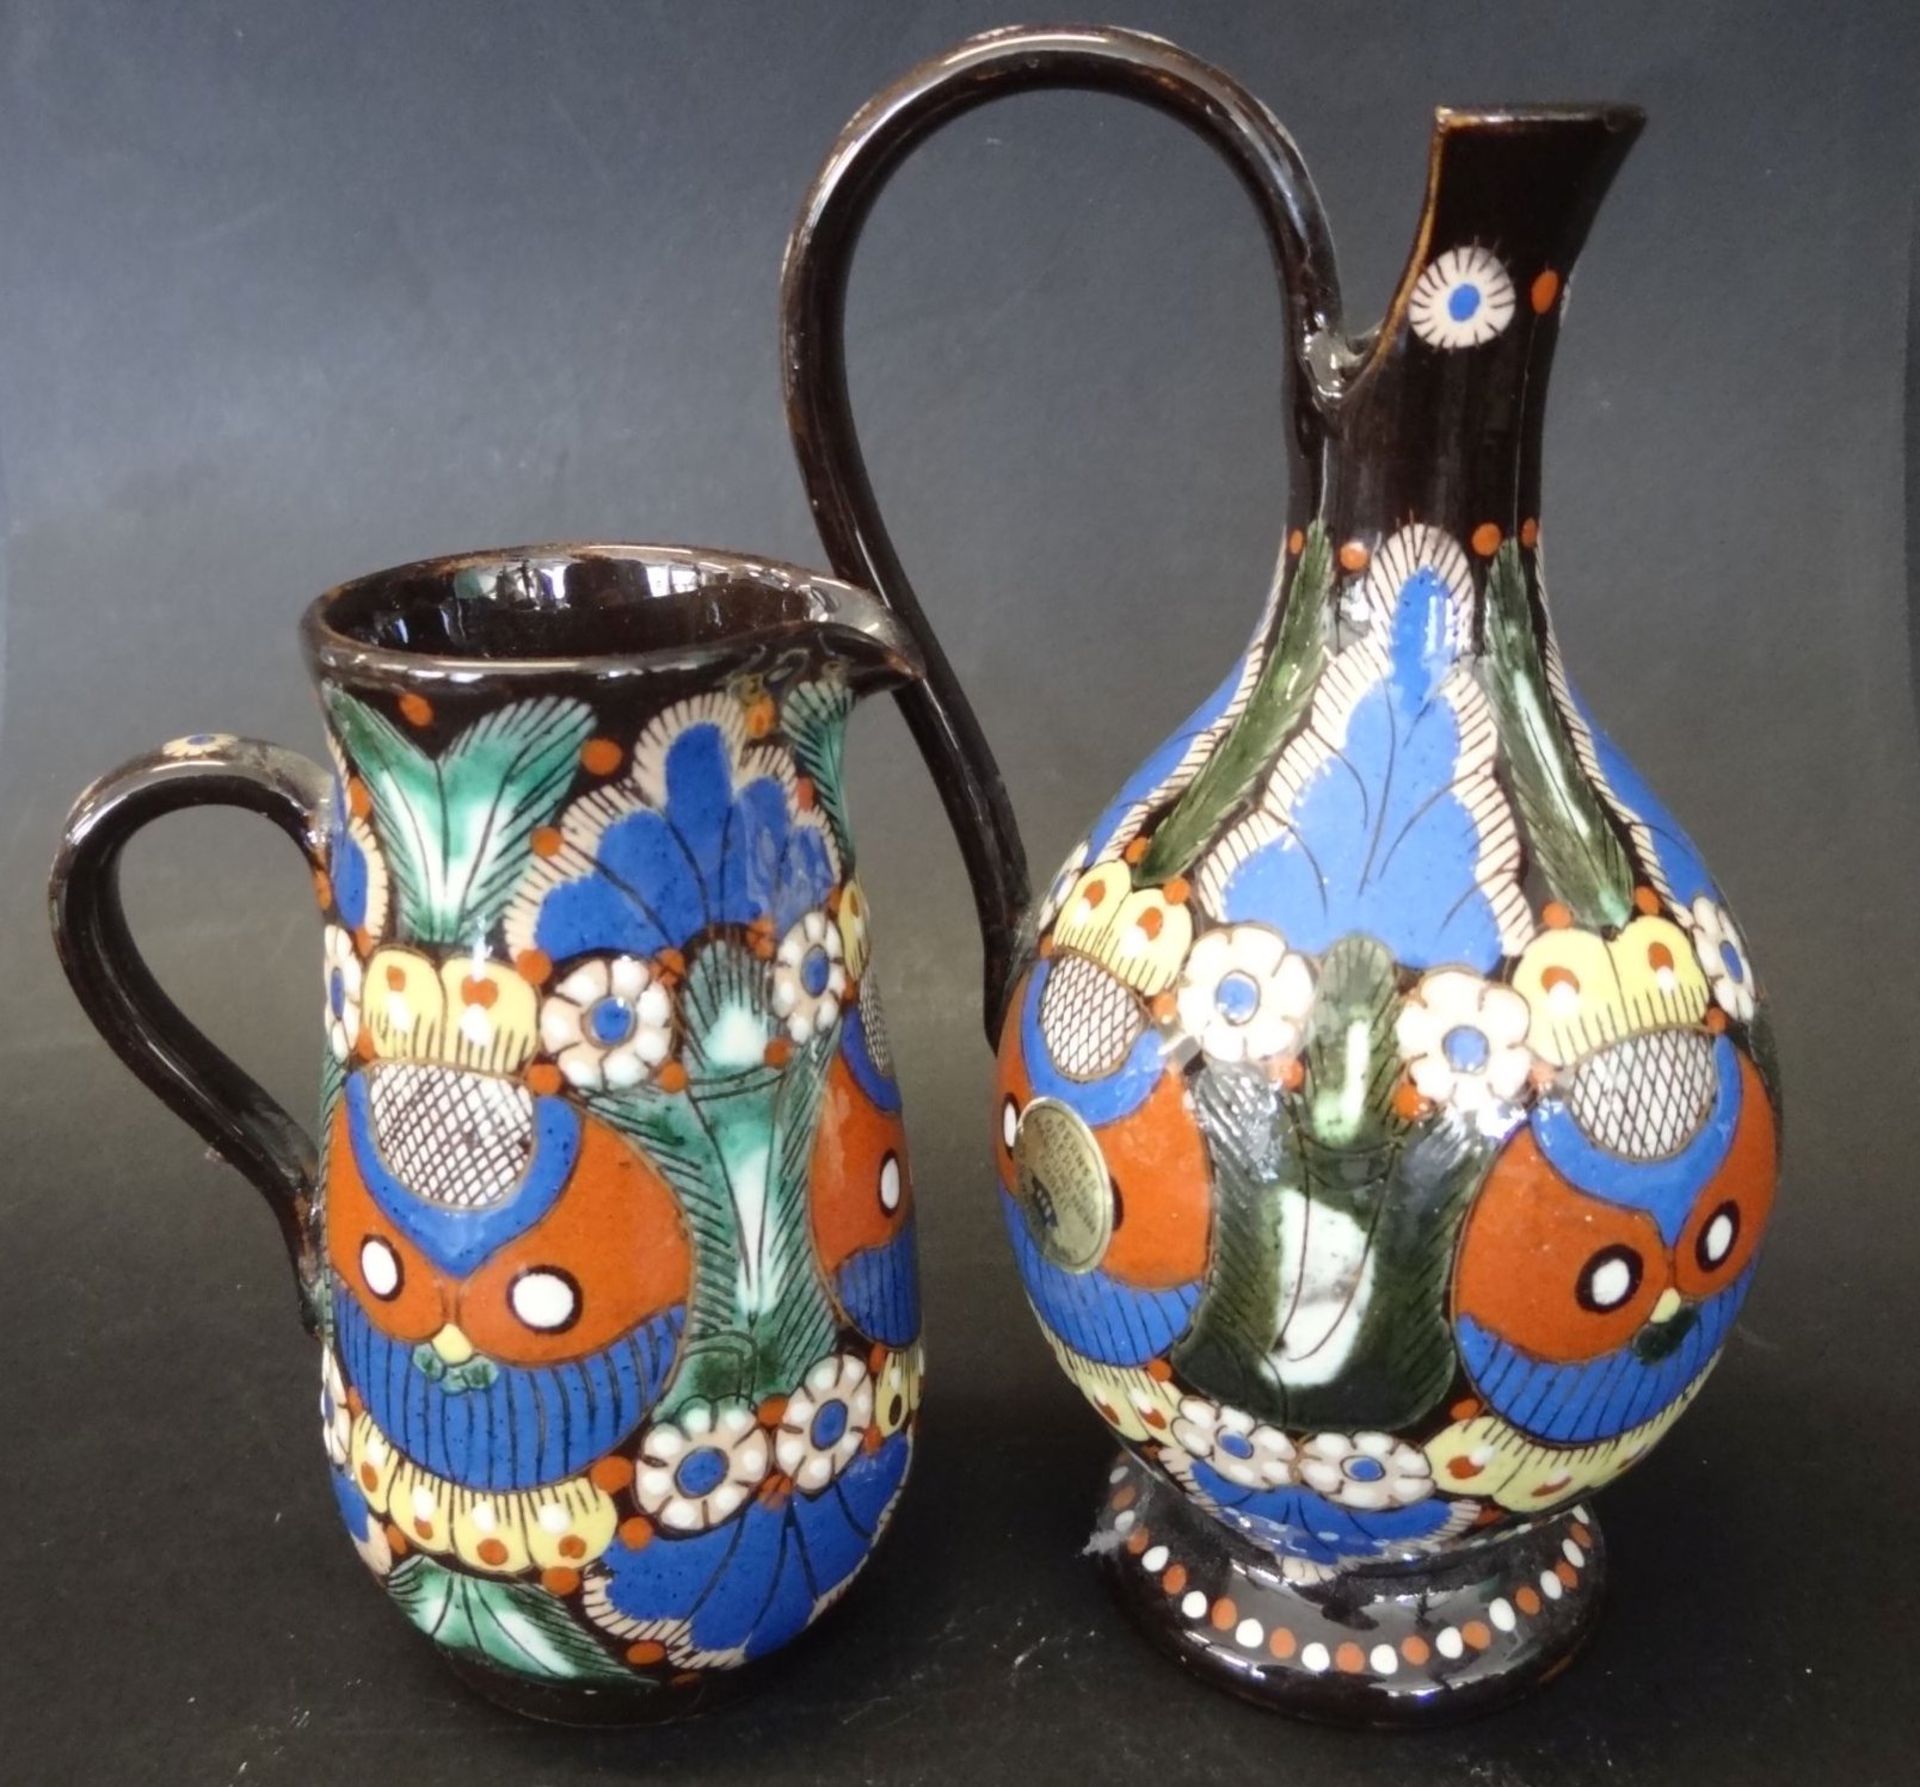 2 Kännchen, Schweizer Keramik aus Thoune, signierte Handarbeit, H-12 und 16 cm, gut erhalte